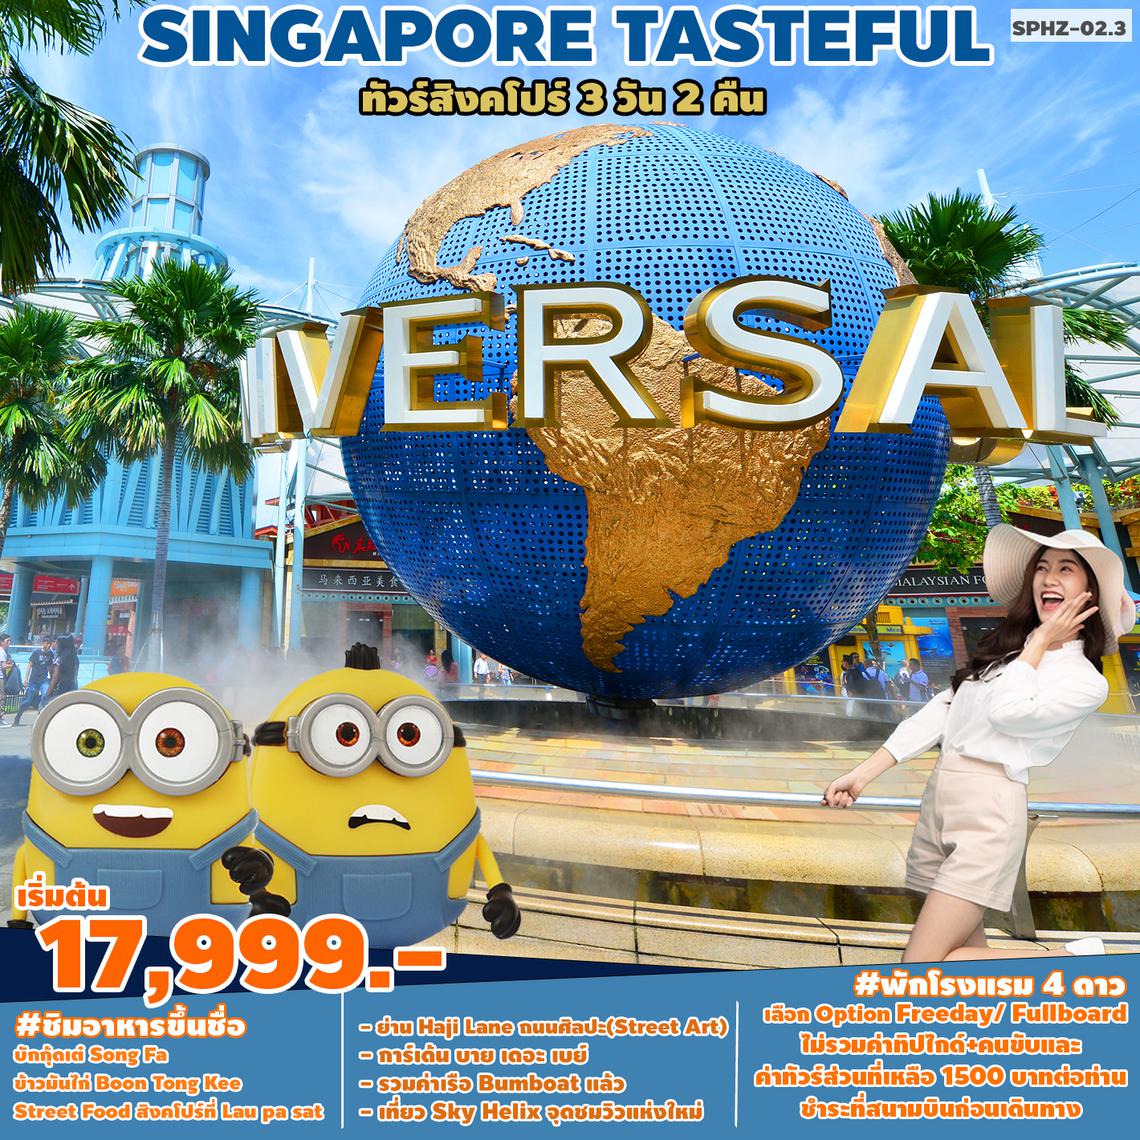 ทัวร์สิงคโปร์ TASTEFUL SINGAPORE 3D 2N (SQ)